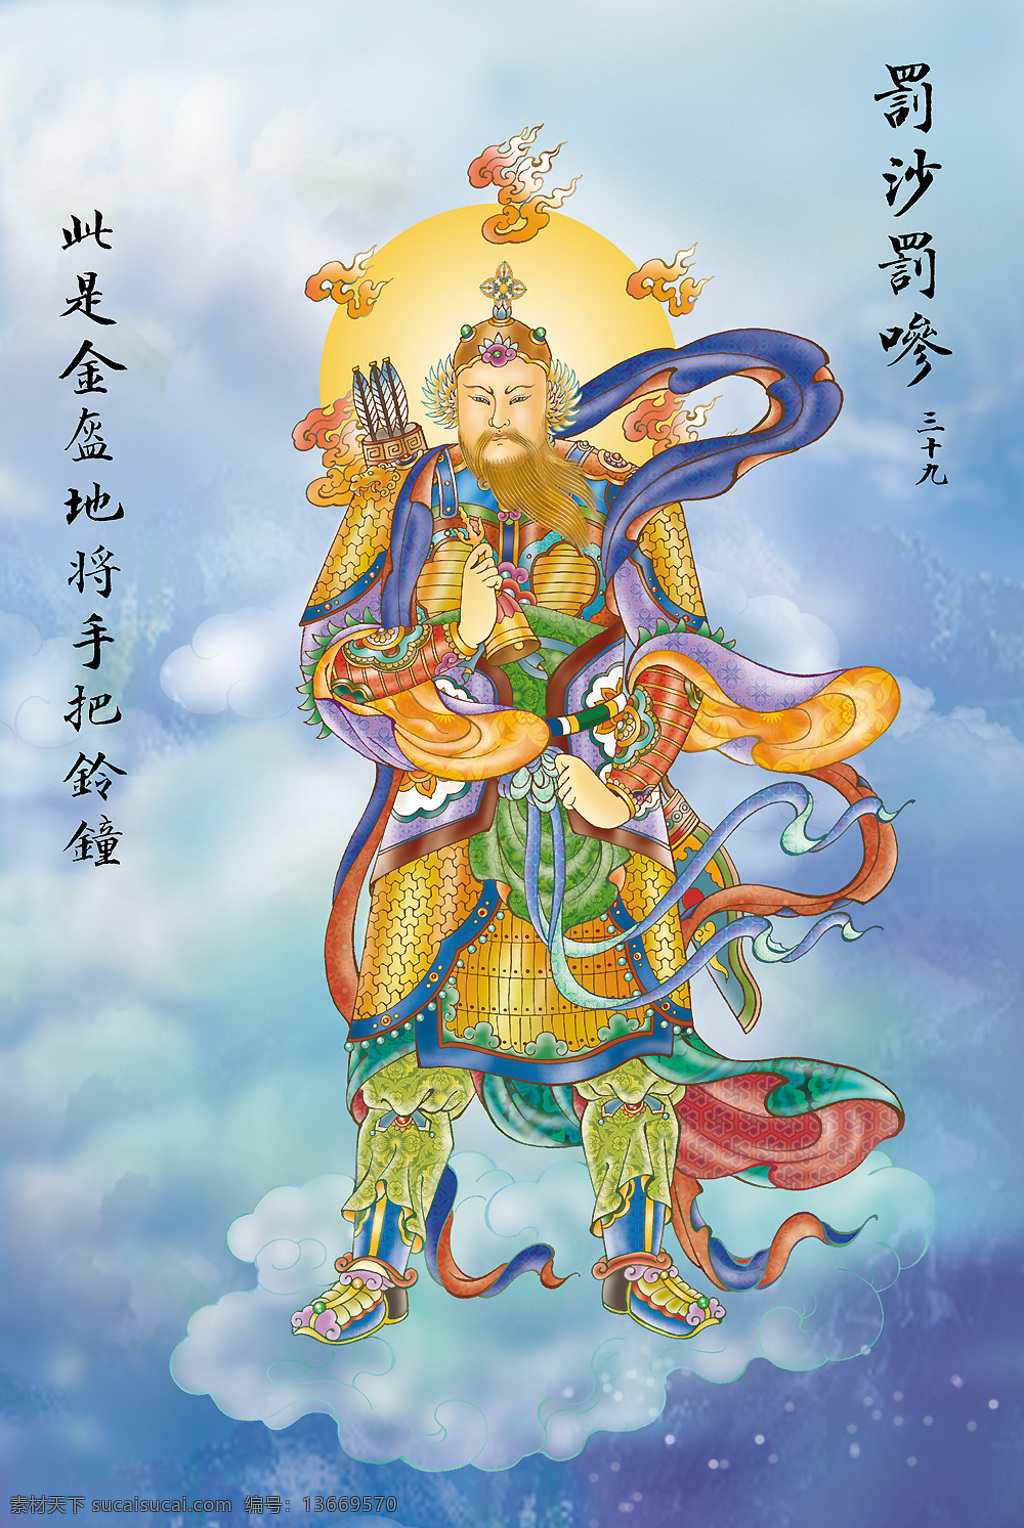 大悲 出 相图 39 佛教 依林法师画 林隆达居士书 台湾 文化艺术 宗教信仰 设计图库